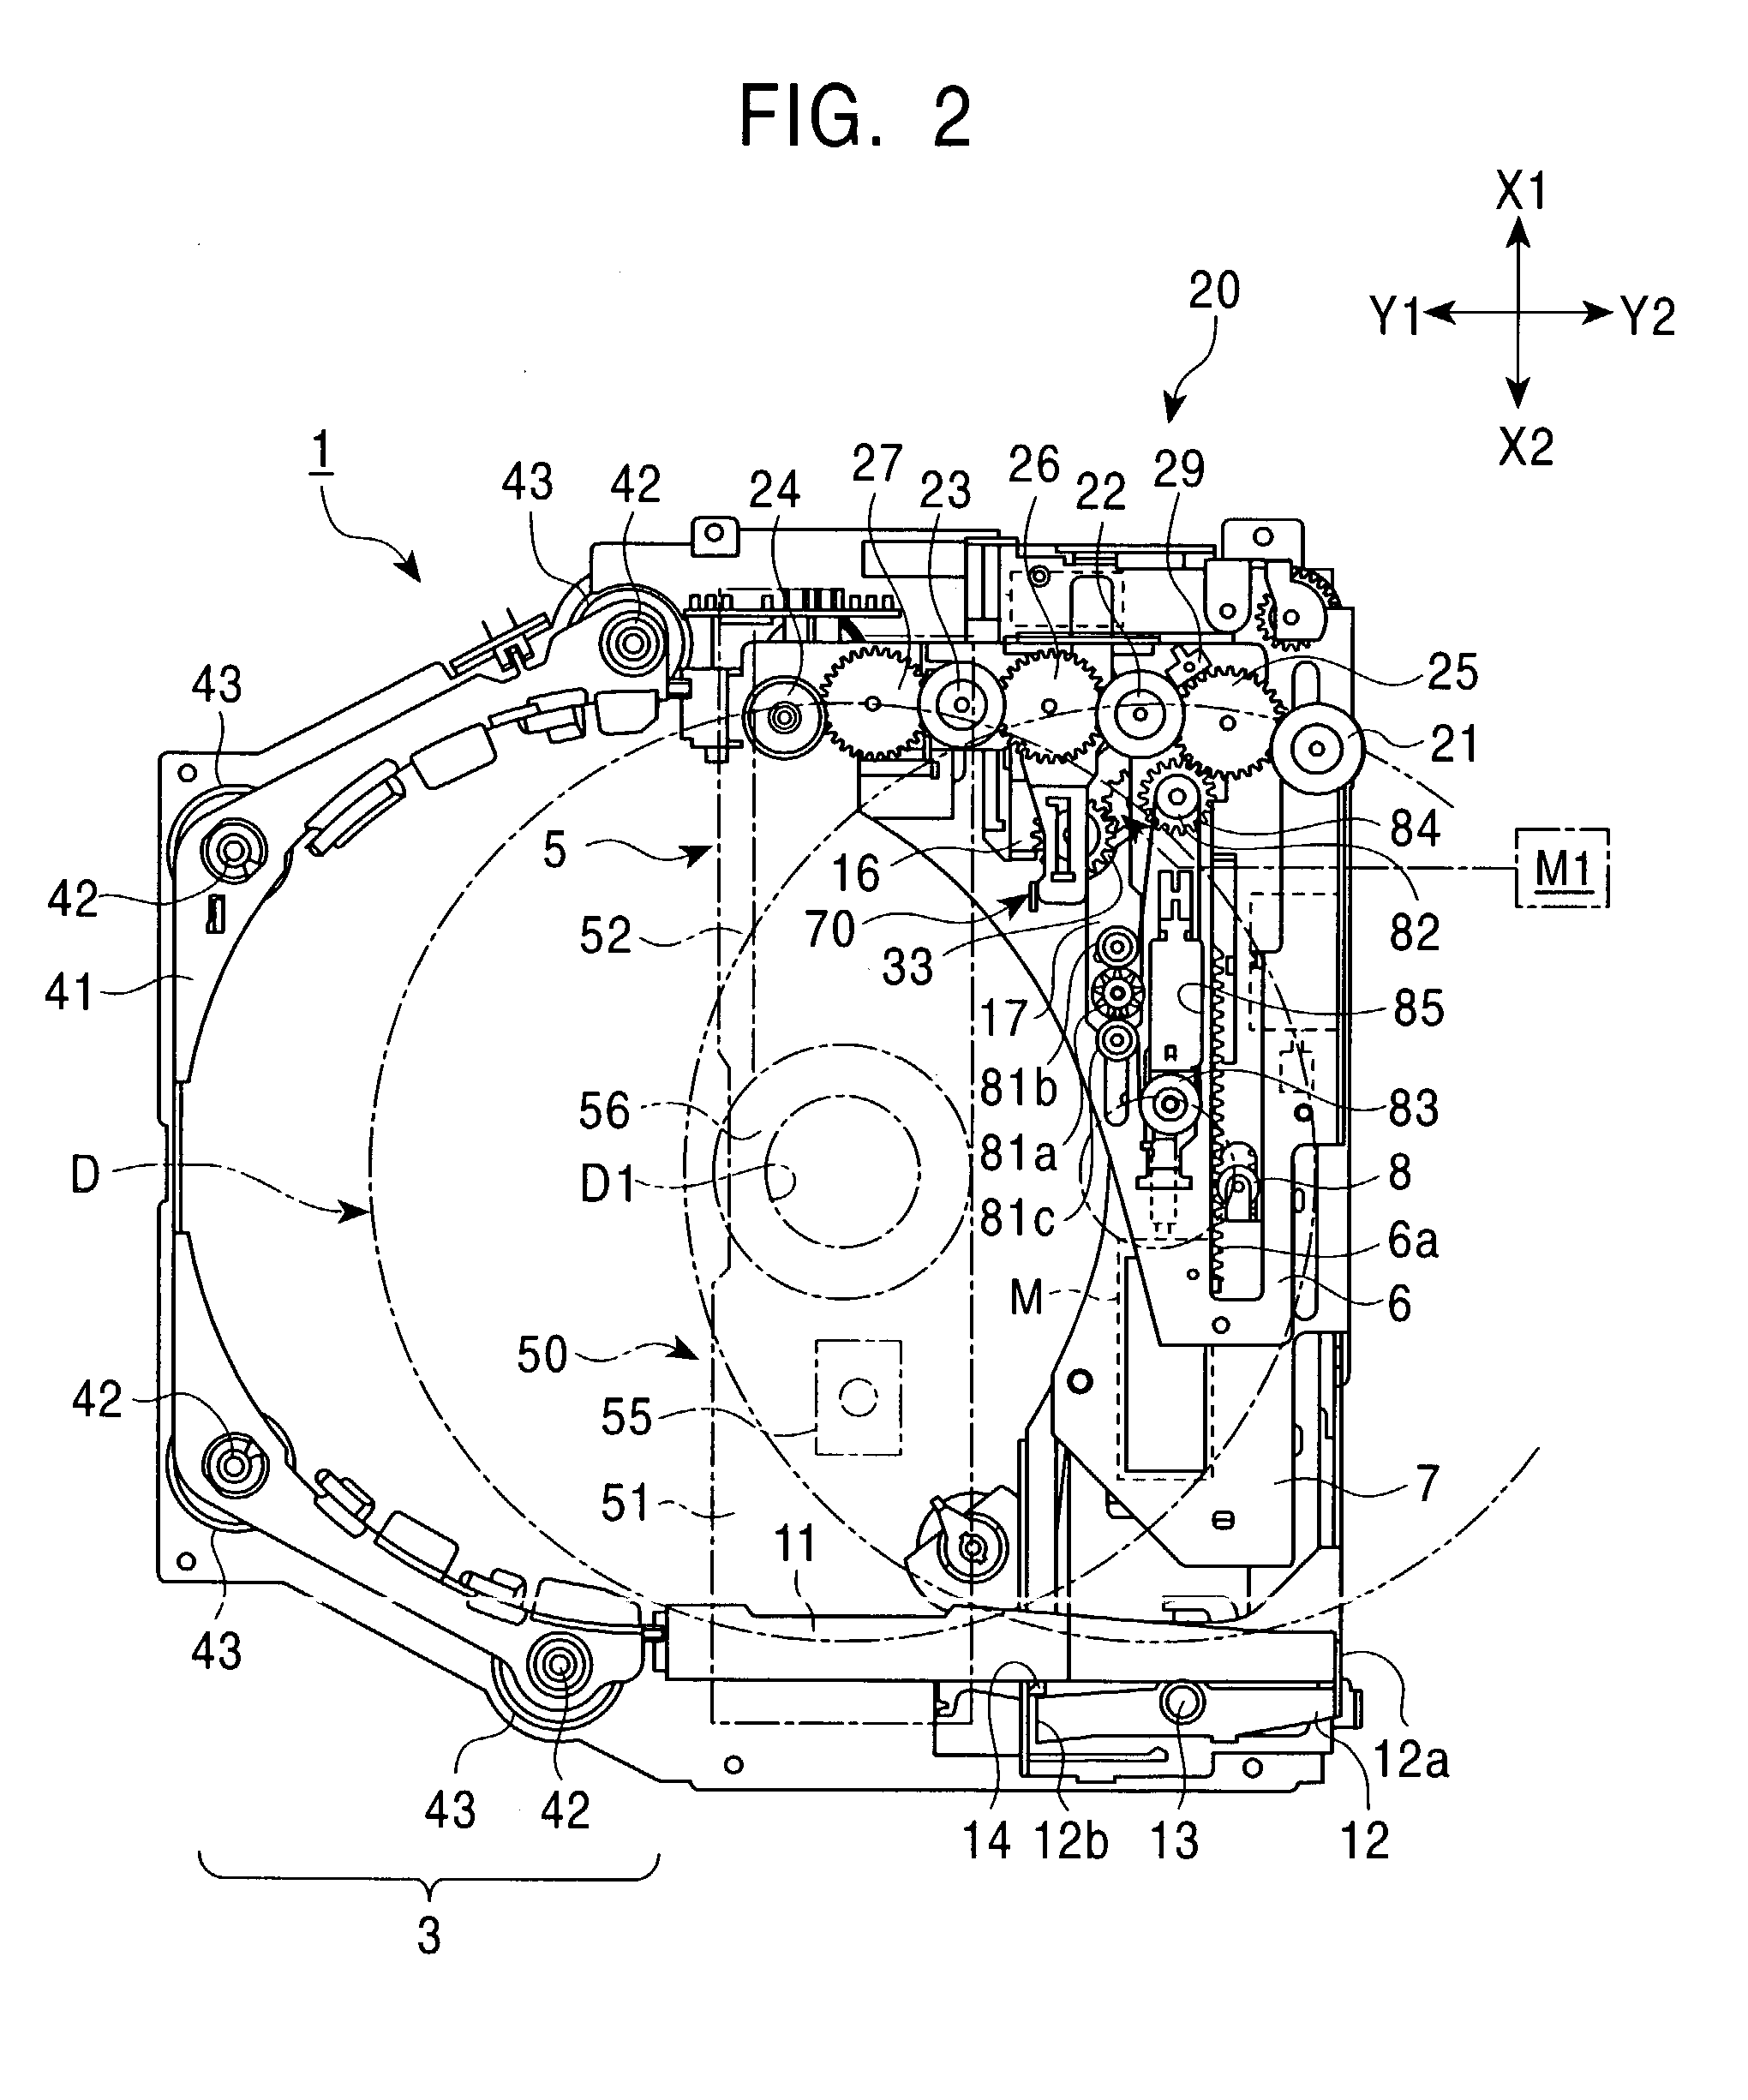 Disk apparatus